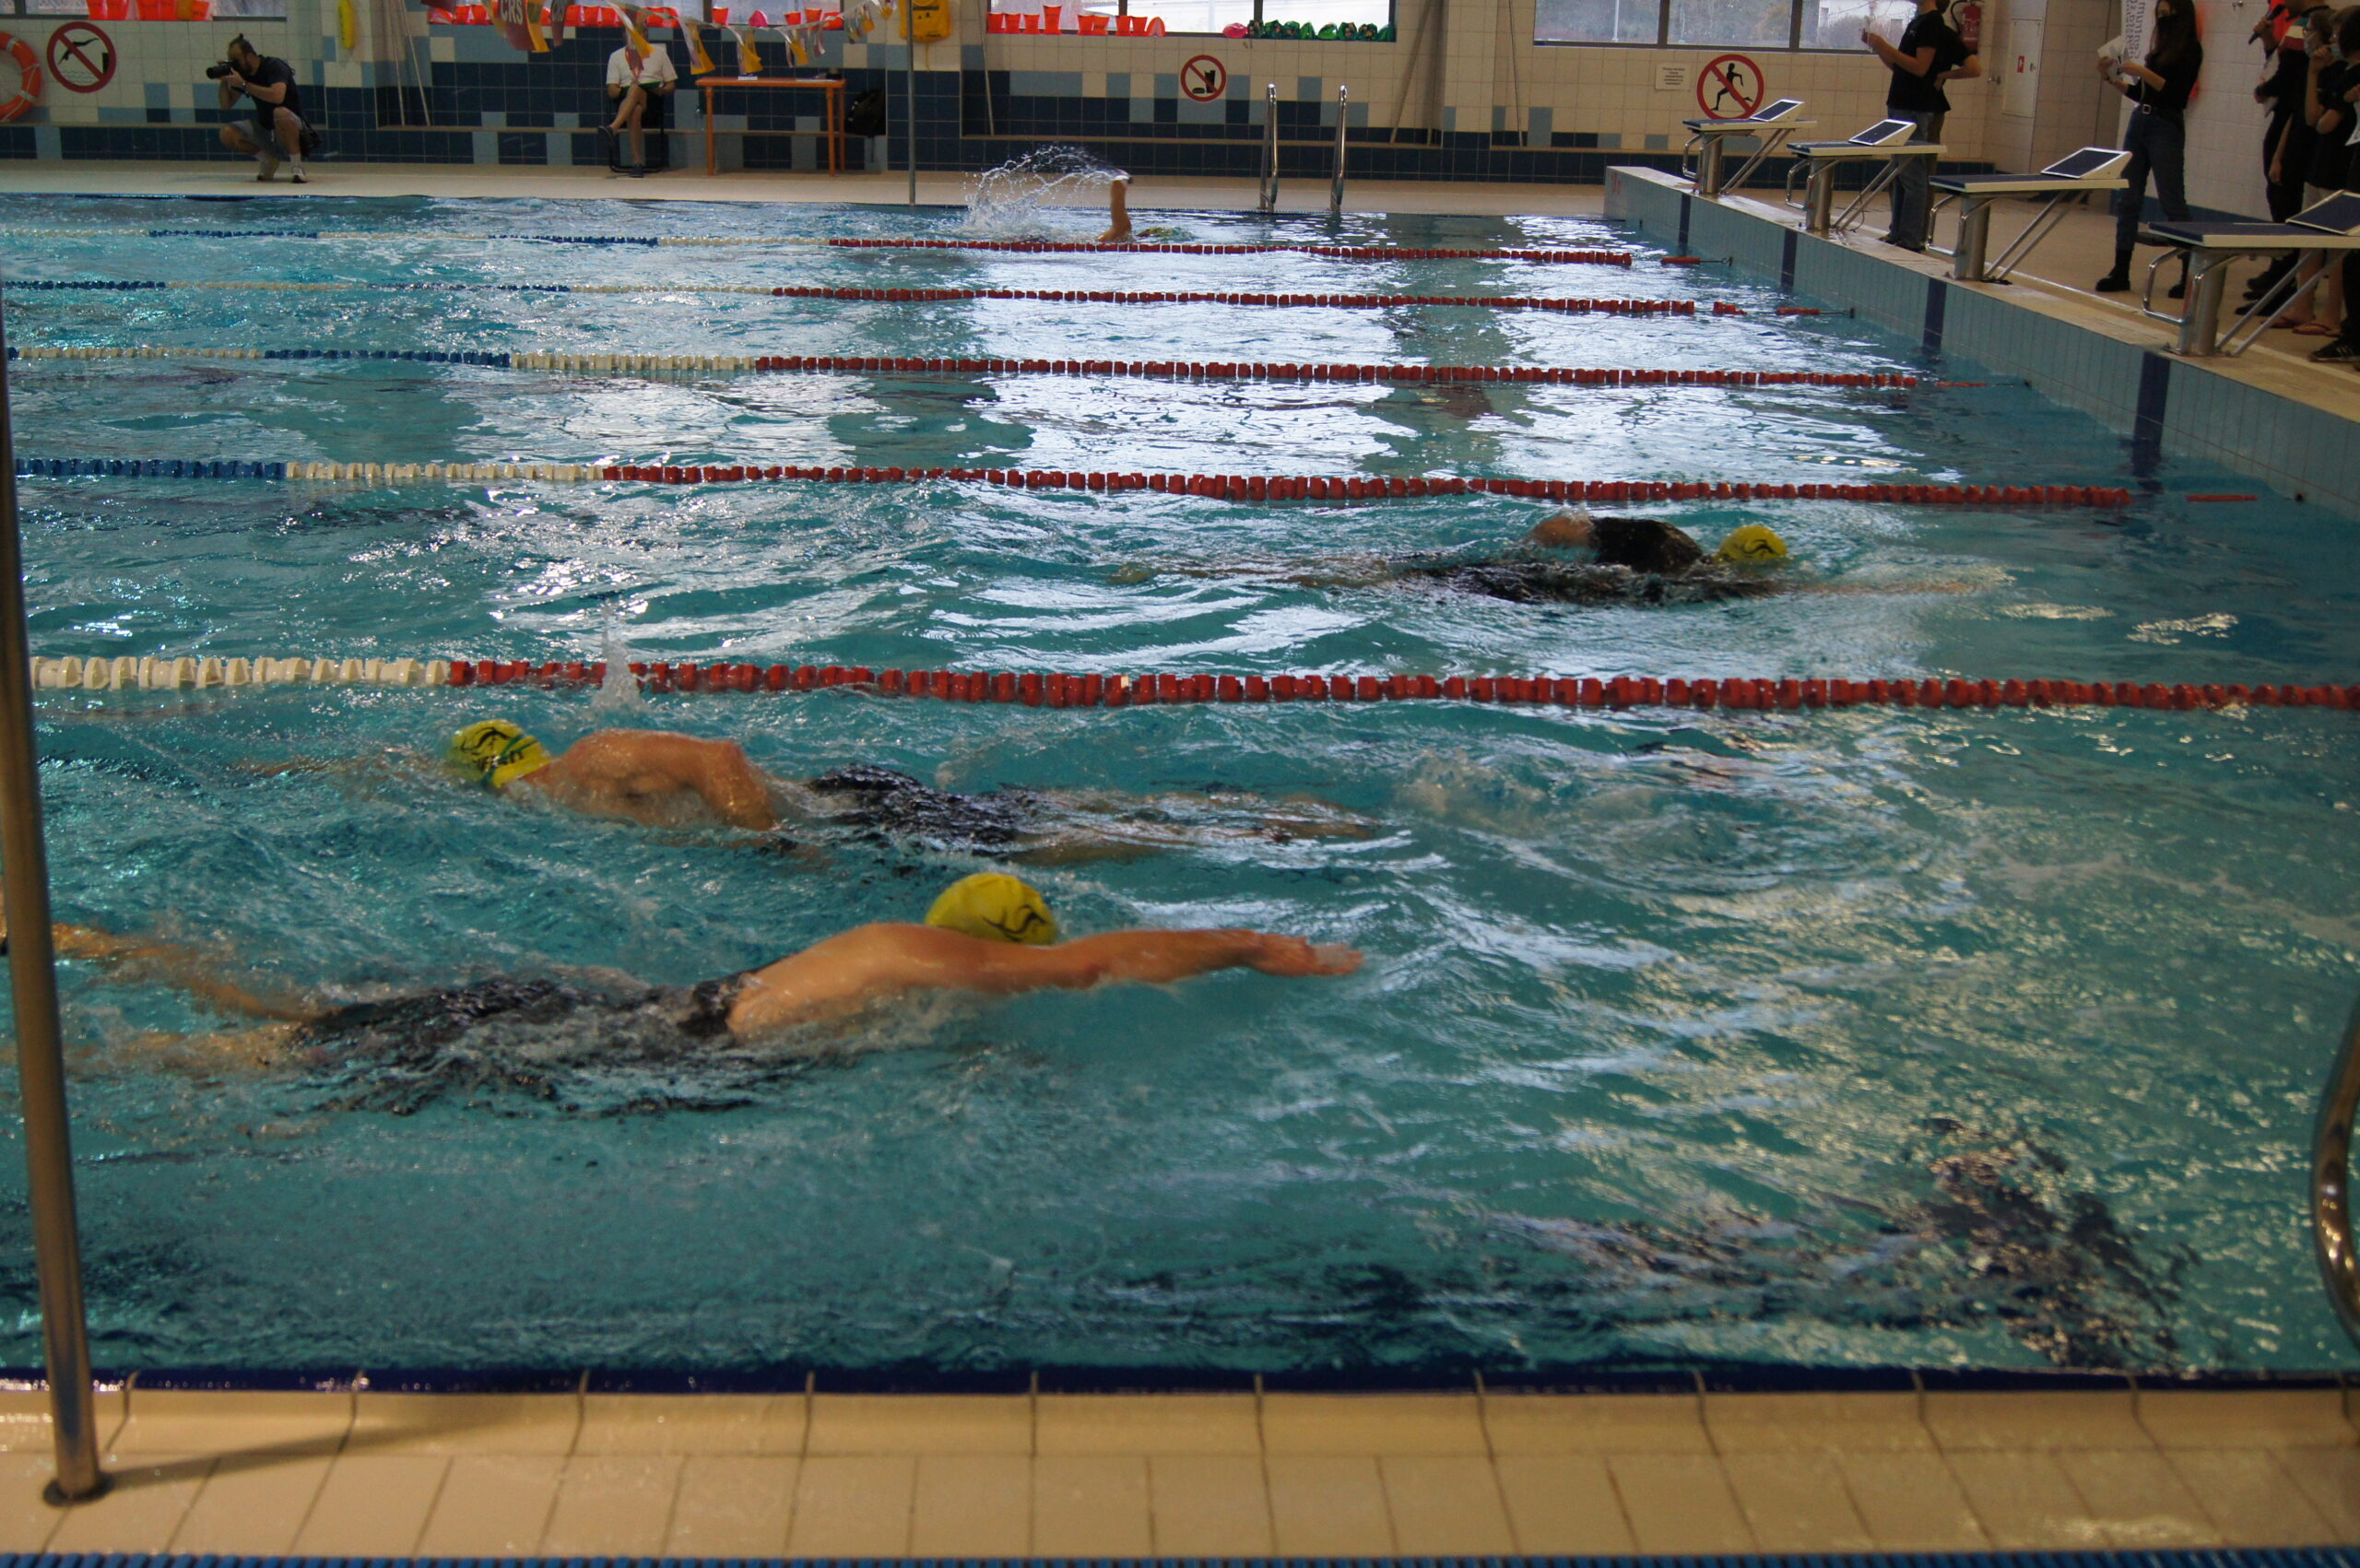 zawody triathlonowe pływalnia, pływający zawodnicy 